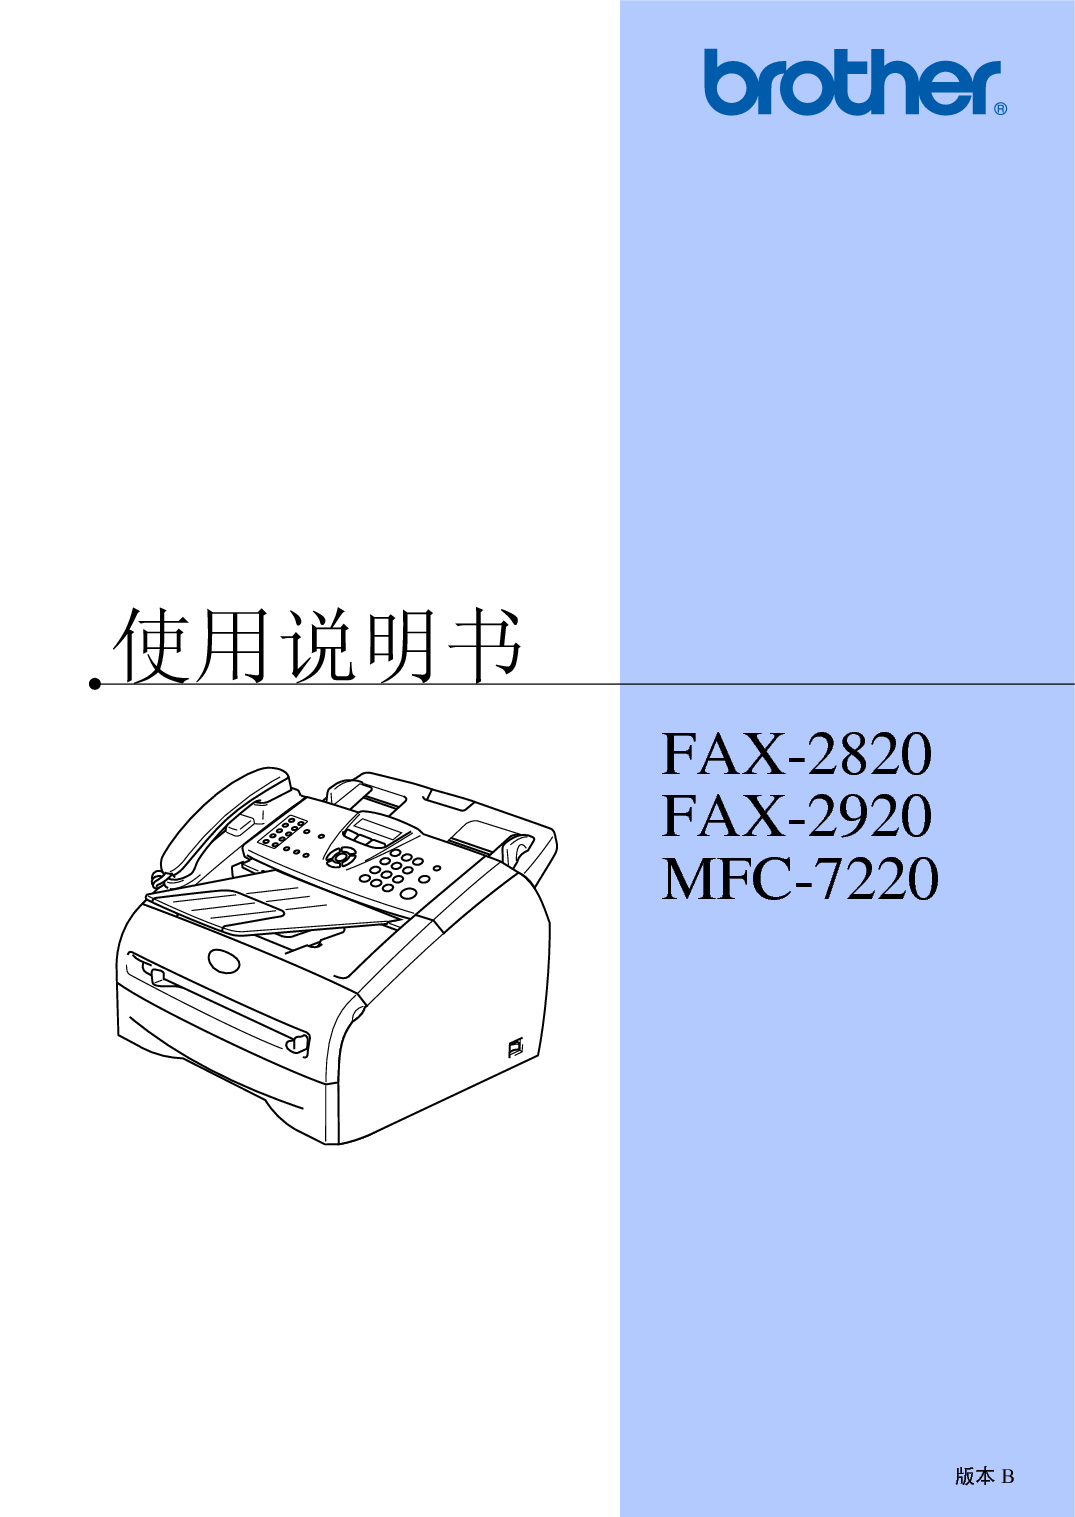 兄弟 Brother FAX-2920, MFC-7220 使用手册 封面